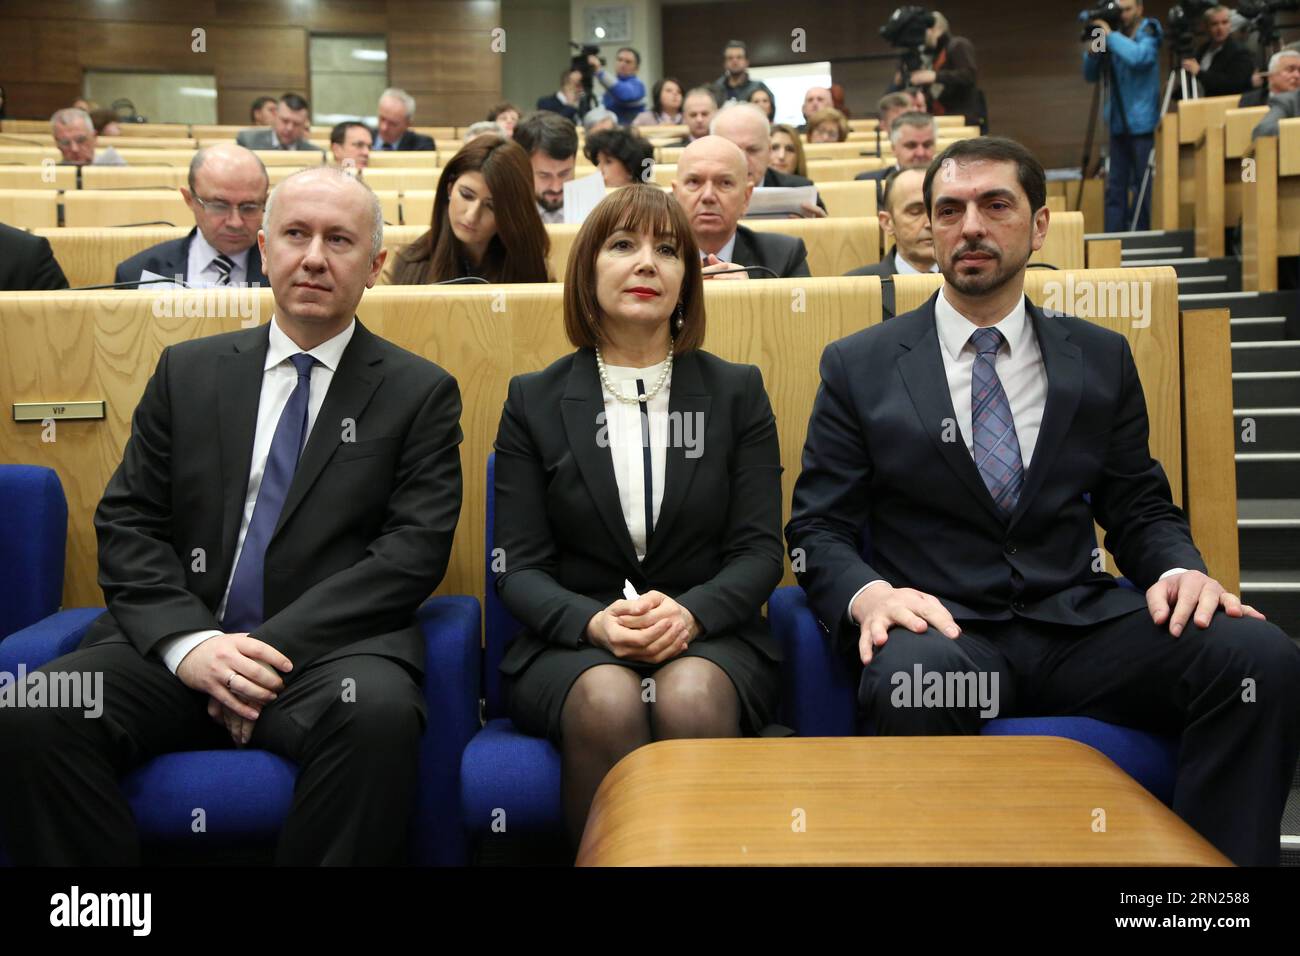 Marinko Cavara (à droite), présidente nouvellement élue de la Fédération de Bosnie-Herzégovine (FBiH), et les deux vice-présidents de la FBiH, Melika Mahmutovic (C) et du serbe Milan Dunovic (à gauche), posent pour une photo dans le bâtiment du Parlement à Sarajevo, Bosnie-Herzégovine, le 9 février 2015. Des représentants de l'Assemblée parlementaire de la FBiH, une entité de Bosnie-Herzégovine, ont élu lundi un nouveau président et deux vice-présidents. (Lyi) BOSNIE-HERZÉGOVINE-SARAJEVO-FBIH-PRÉSIDENT HarisxMemija PUBLICATIONxNOTxINxCHN nouvellement élu Président de la Fédération de Bosnie-Herzégovine FBiH Marinko Cavara Banque D'Images